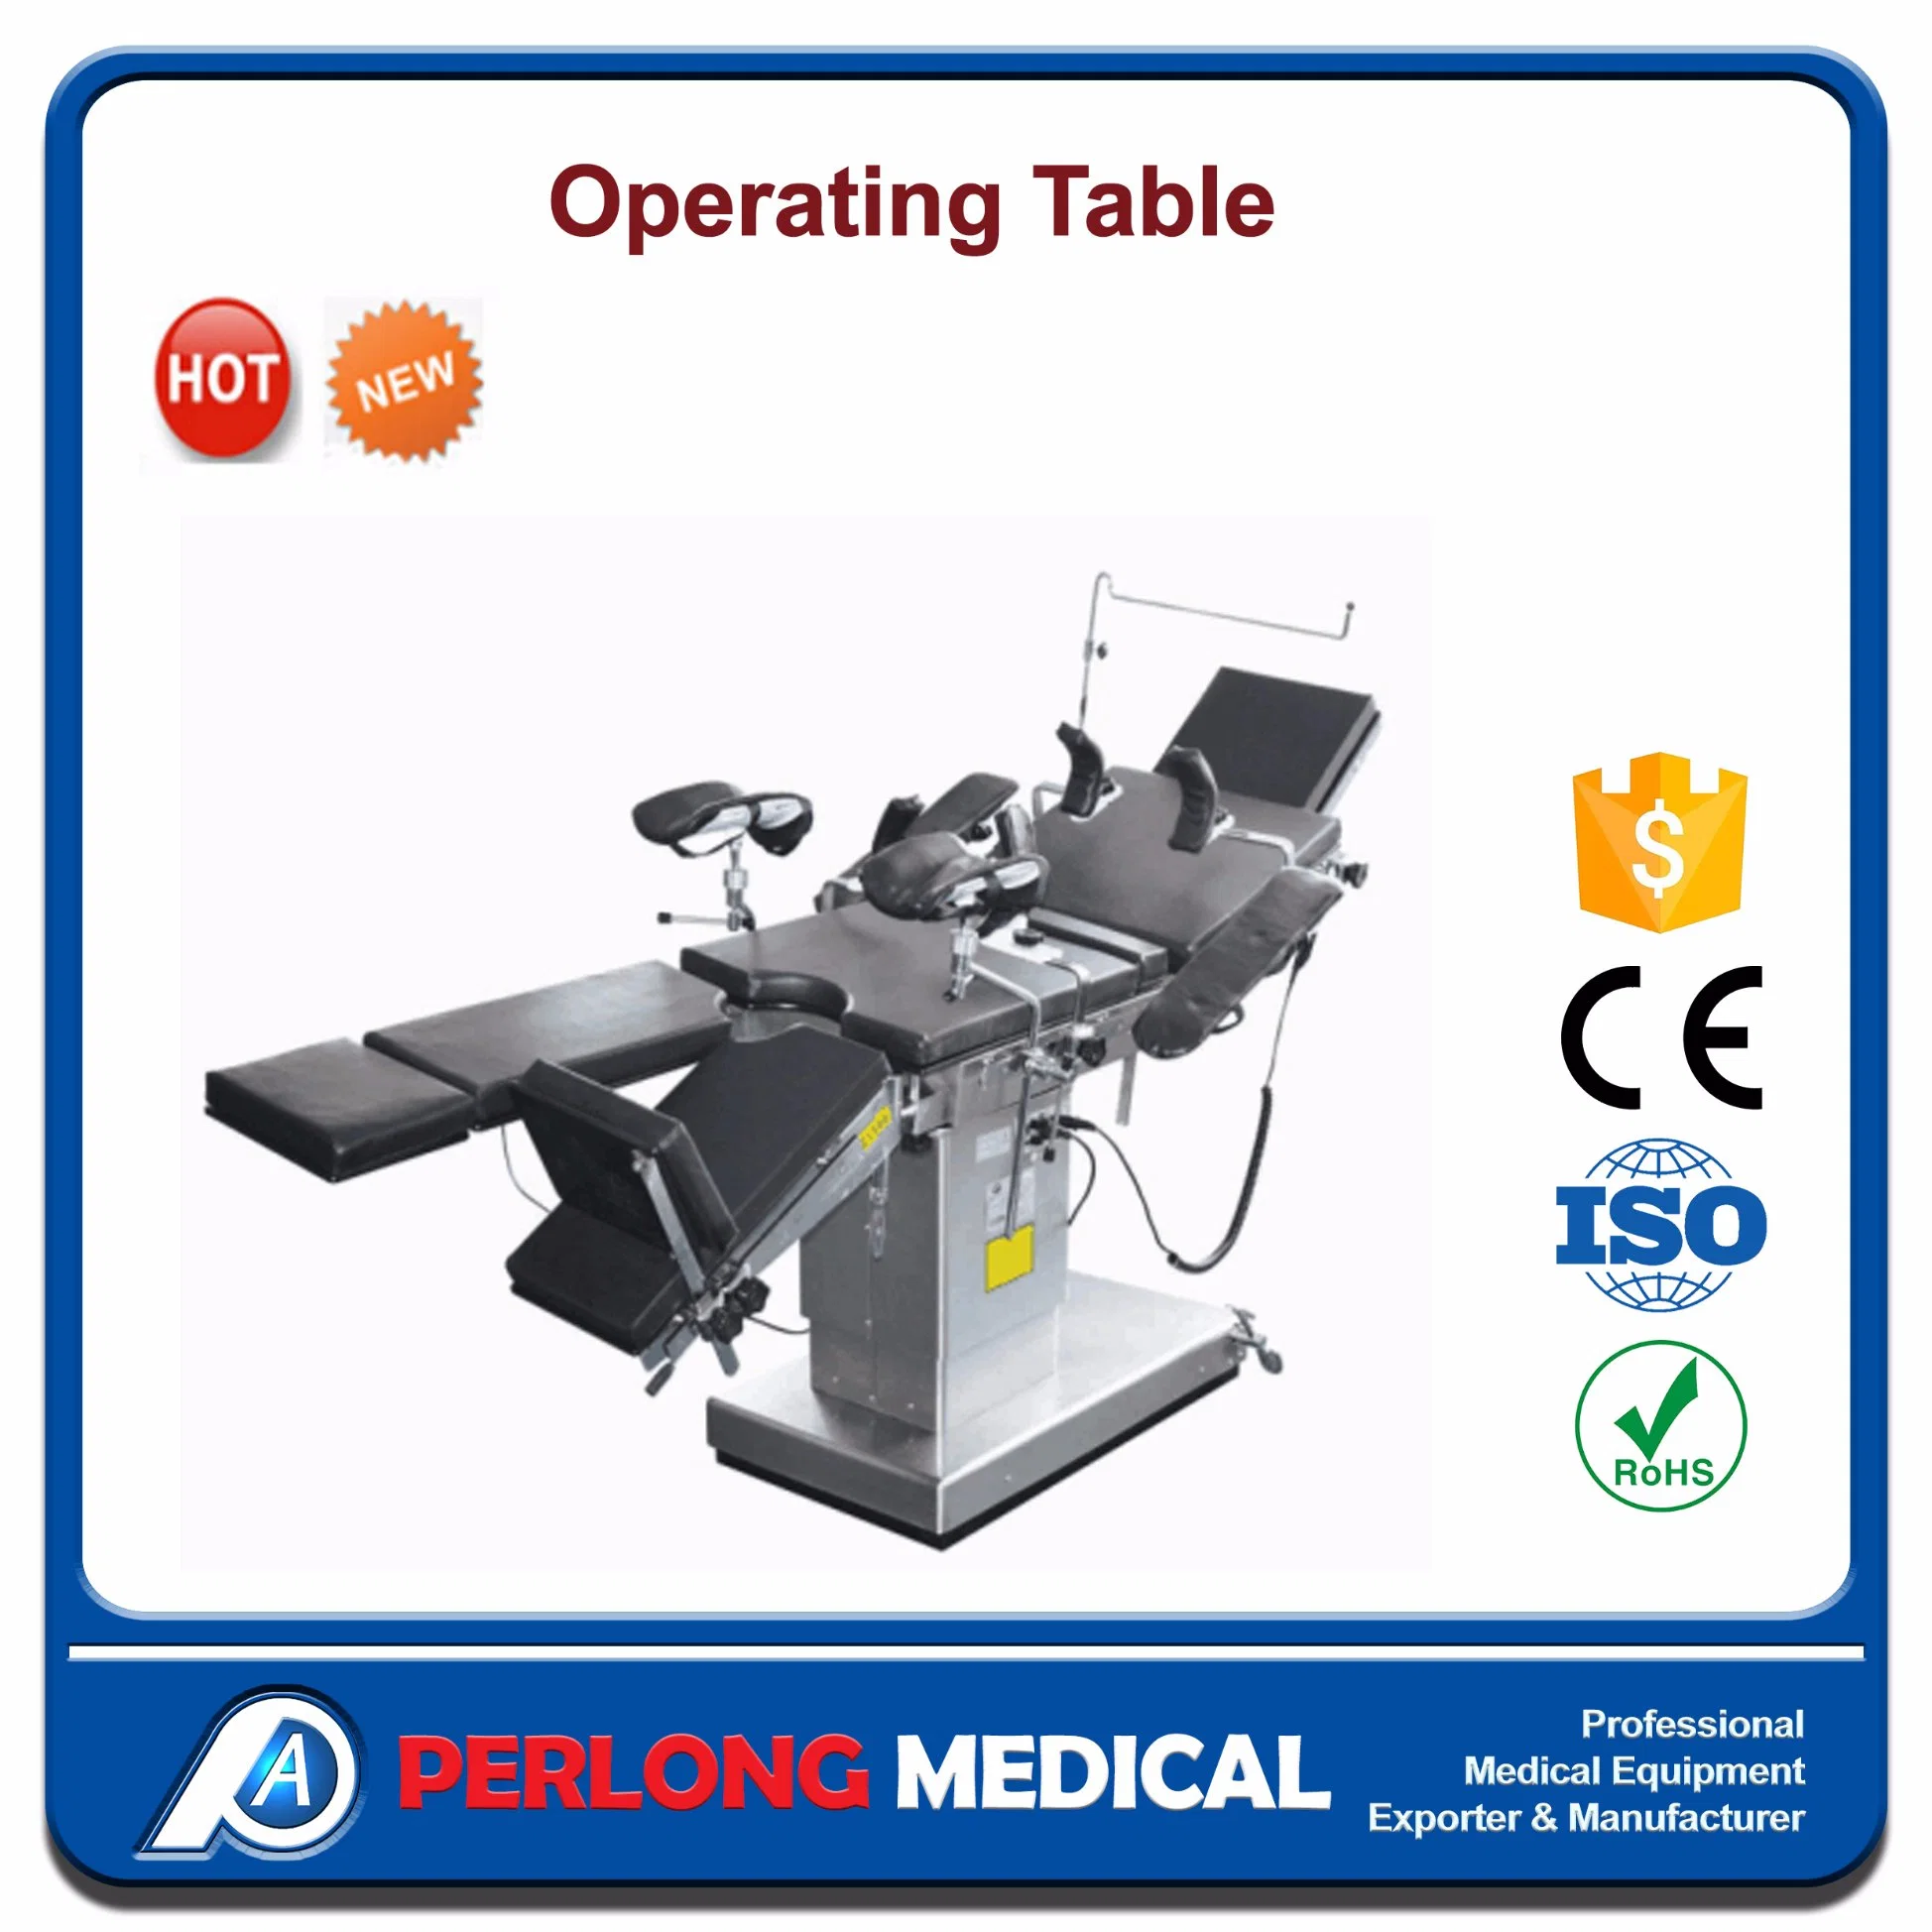 جدول التشغيل الكهربائي لمعدات المستشفيات (Hospital Equipment Electric Operating Table) رقم ot-N